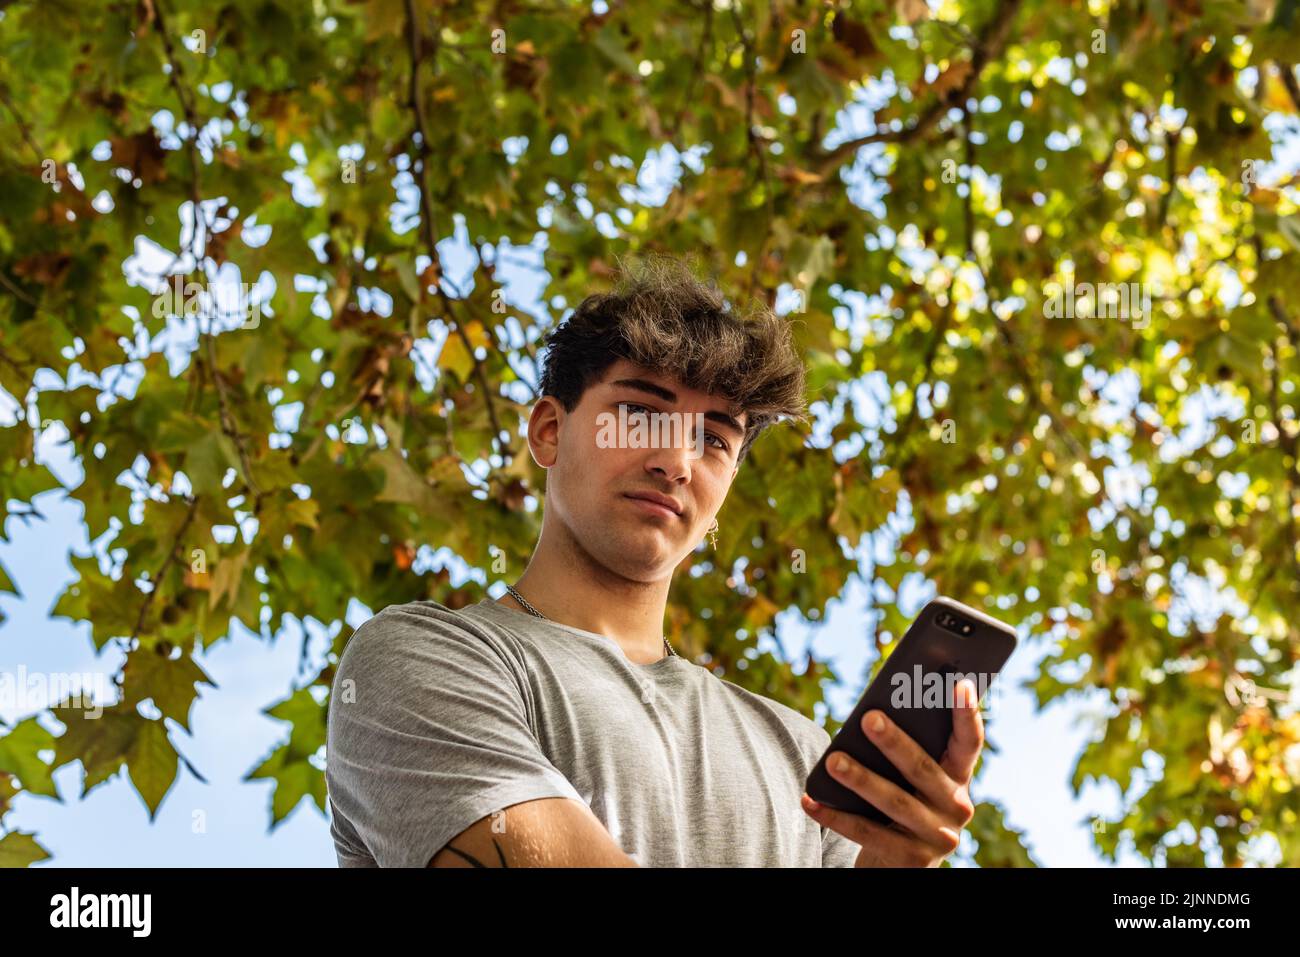 Niedriger Winkel eines jungen Mannes, der sein Smartphone in der Hand hält, ernst, und die Kamera in einem öffentlichen Park anschaut Stockfoto